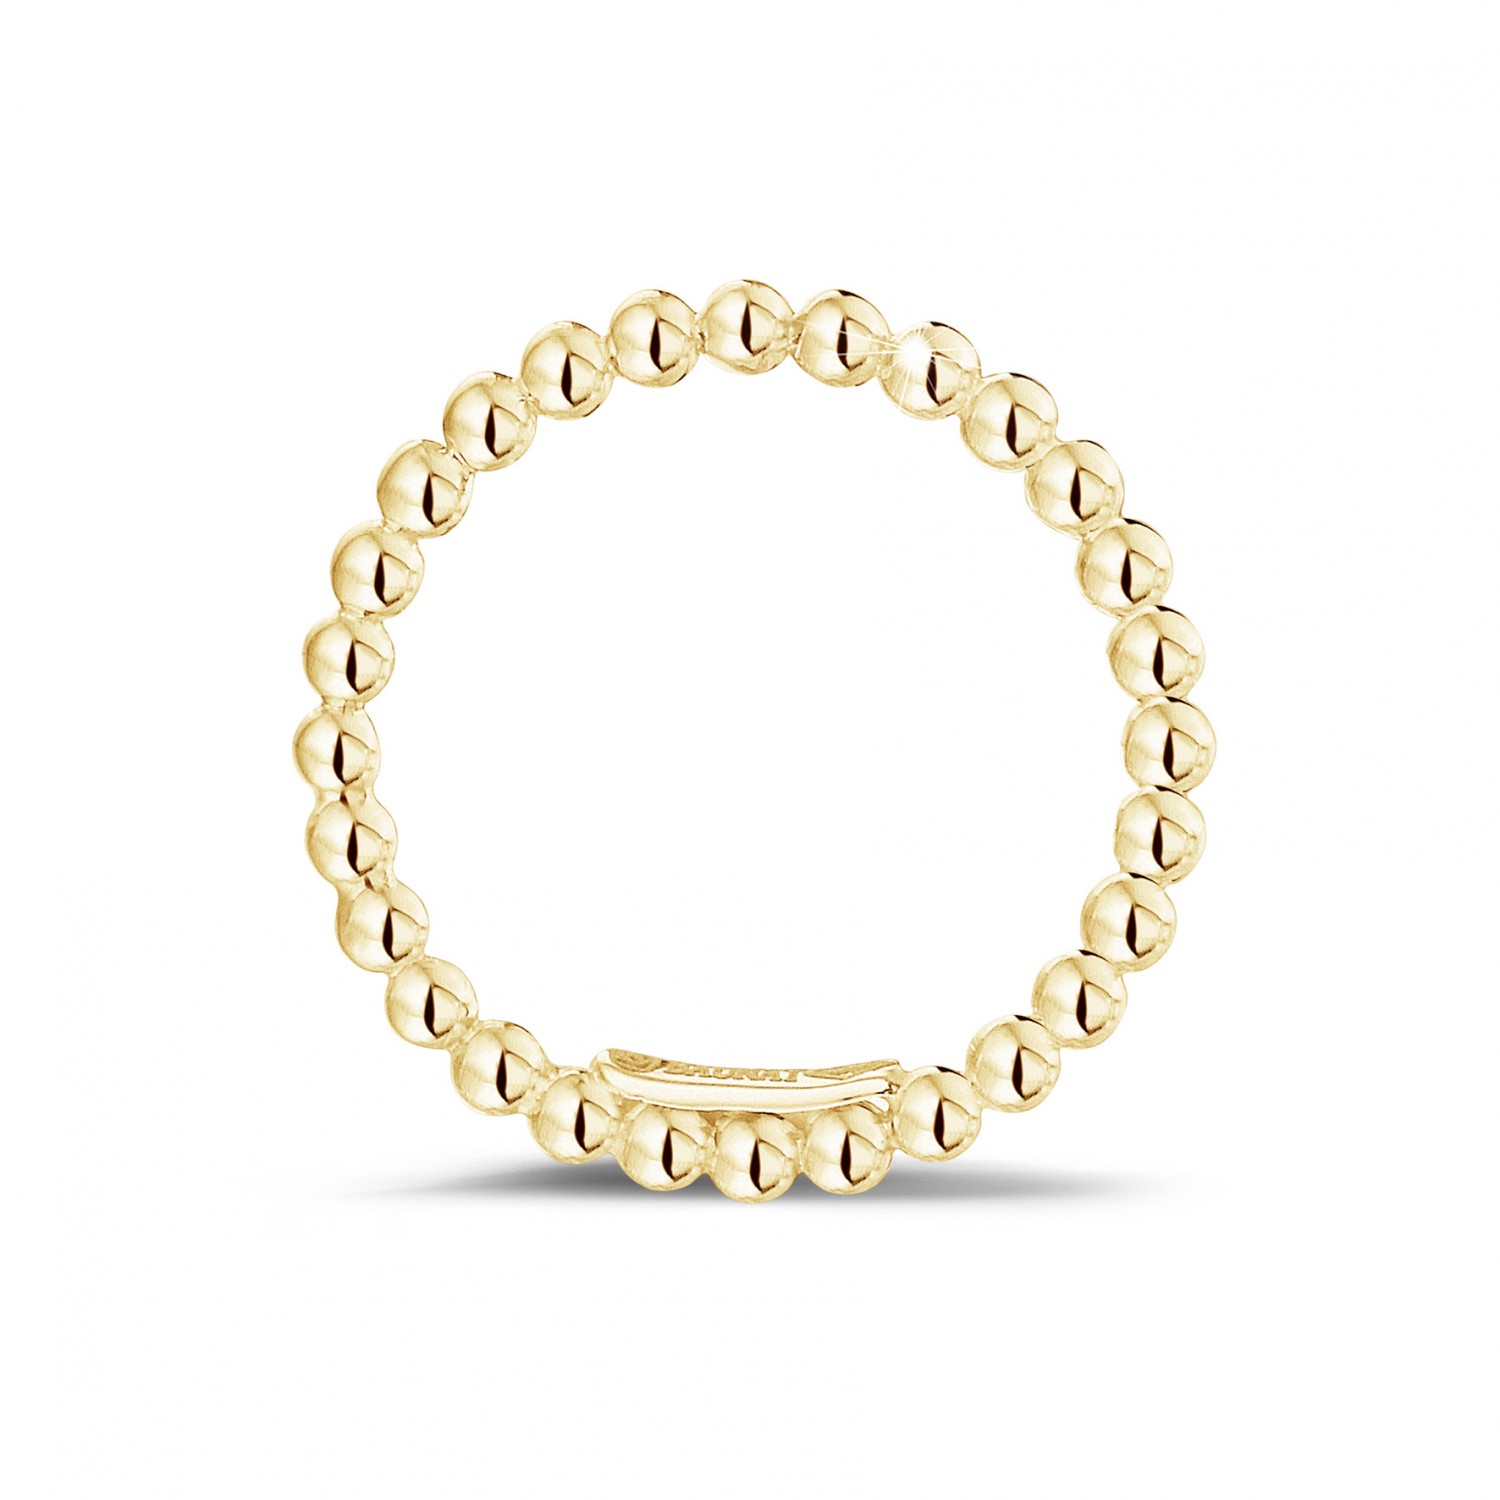 Pulsera de brazalete de oro blanco de 9 quilates estilo de corte de diamante de mujer 3 mm 2.50g CAJA DE REGALO Joyería Pulseras Brazaletes 